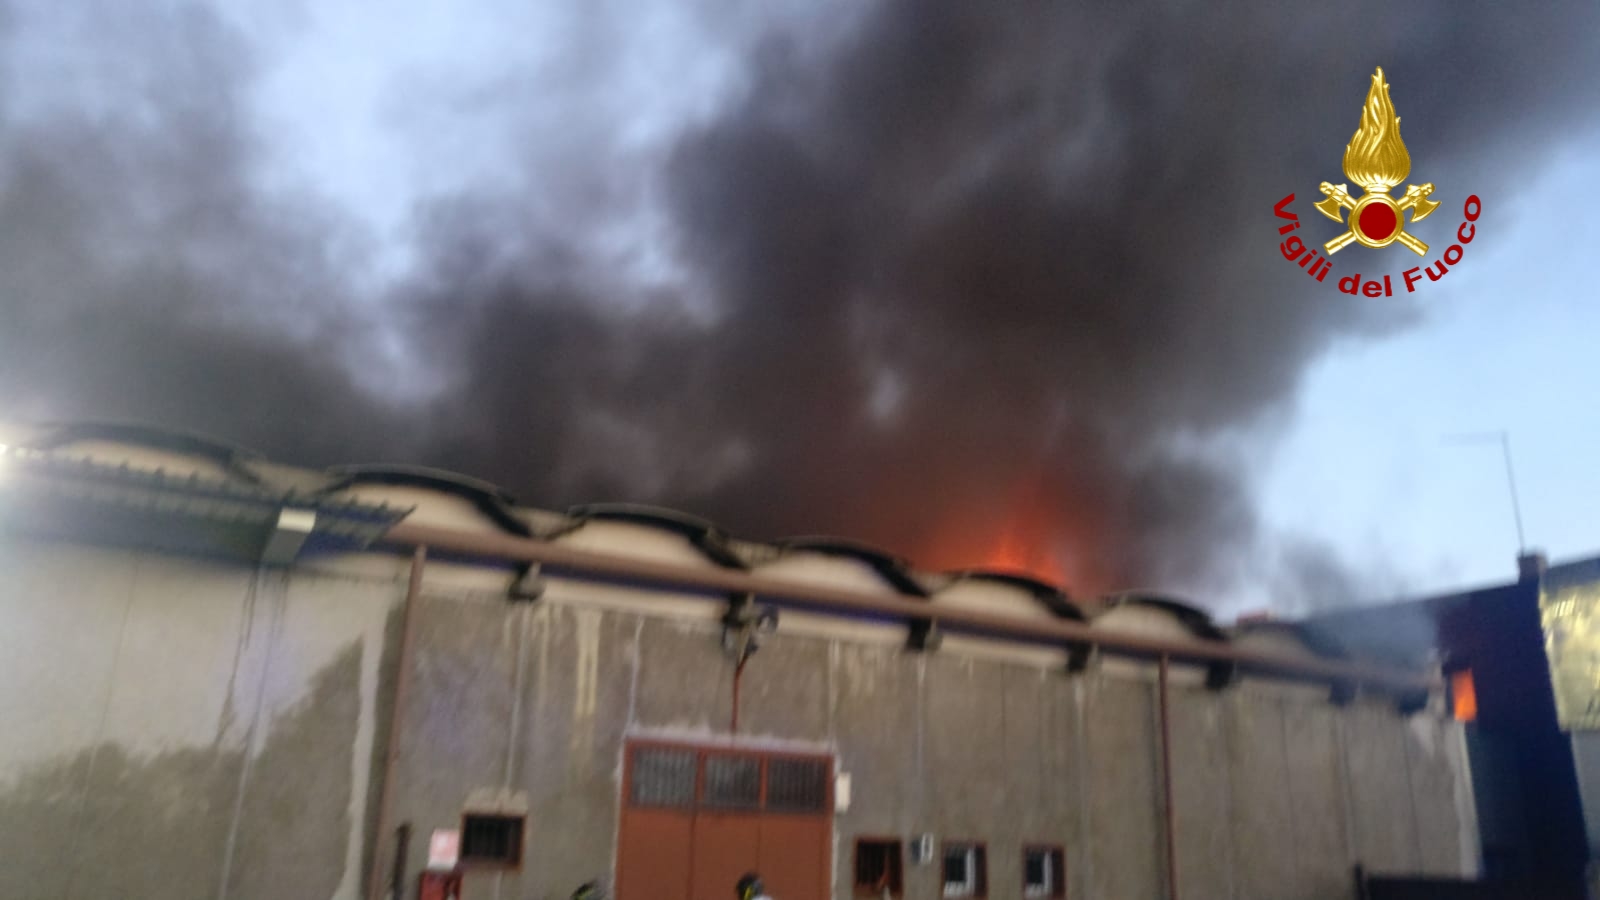 Padova, violento incendio all'interno di un'azienda di ricambi industriali